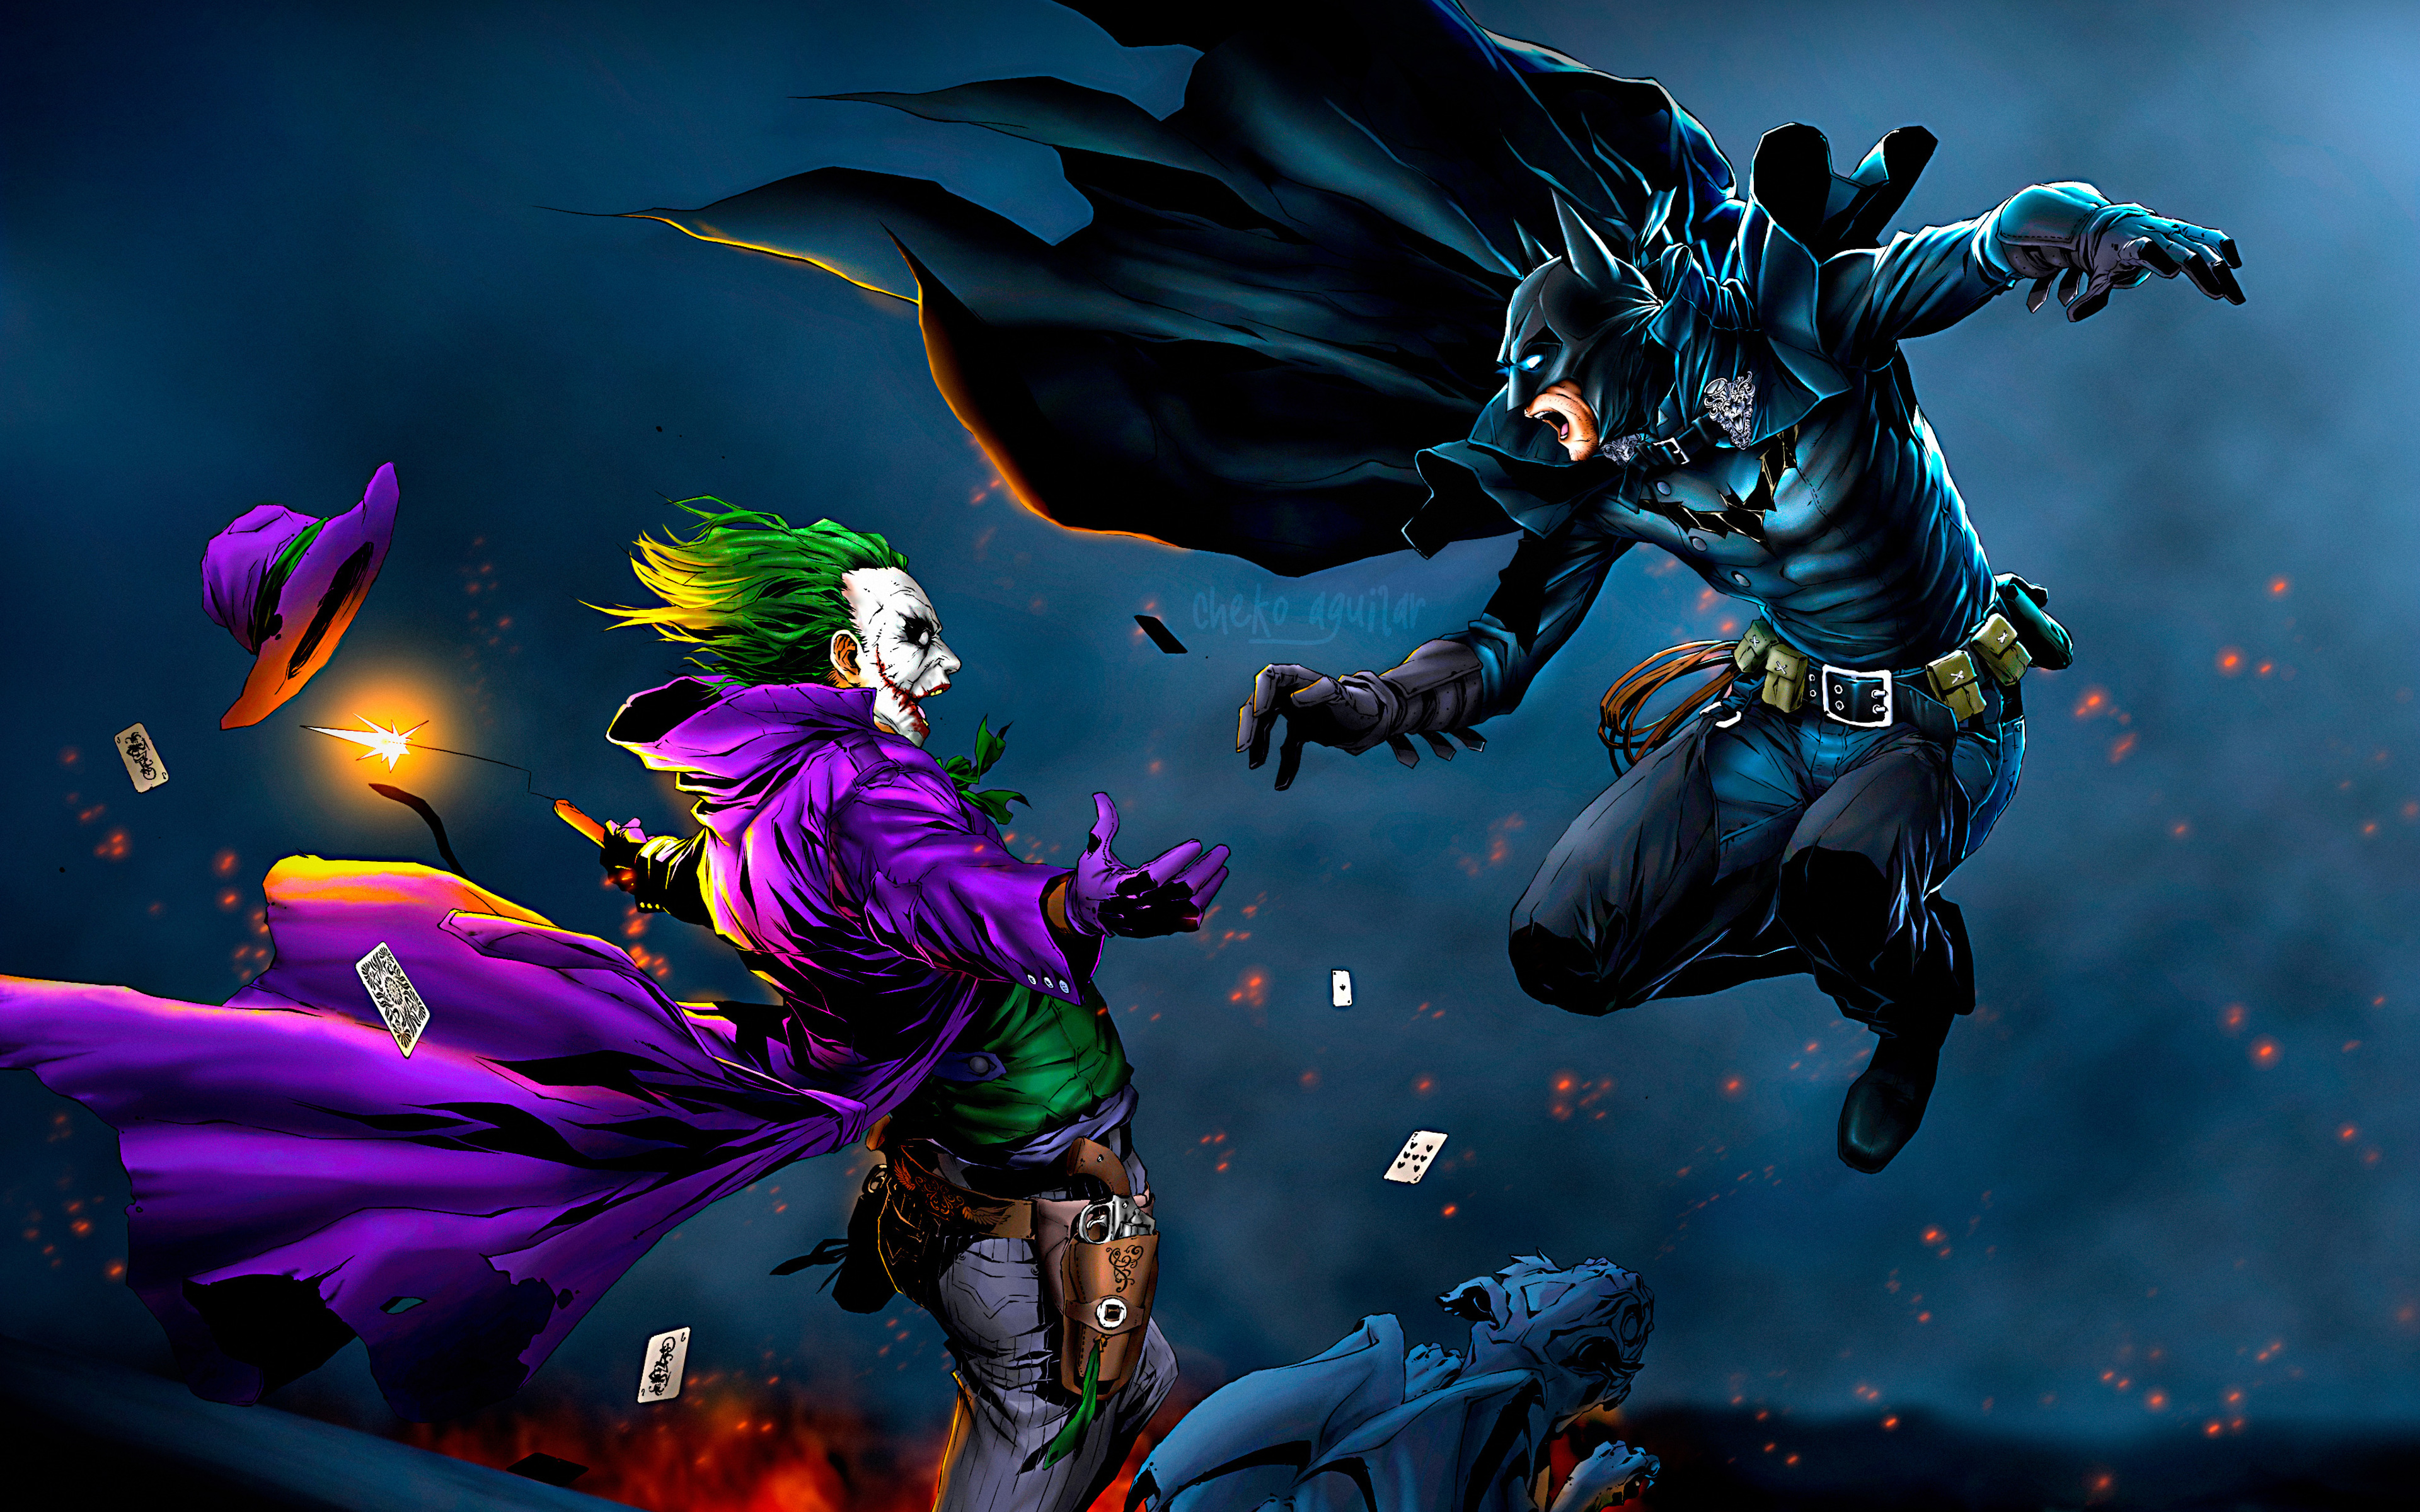 Download wallpapers 4k Batman vs Joker battle superheroe vs 3840x2400